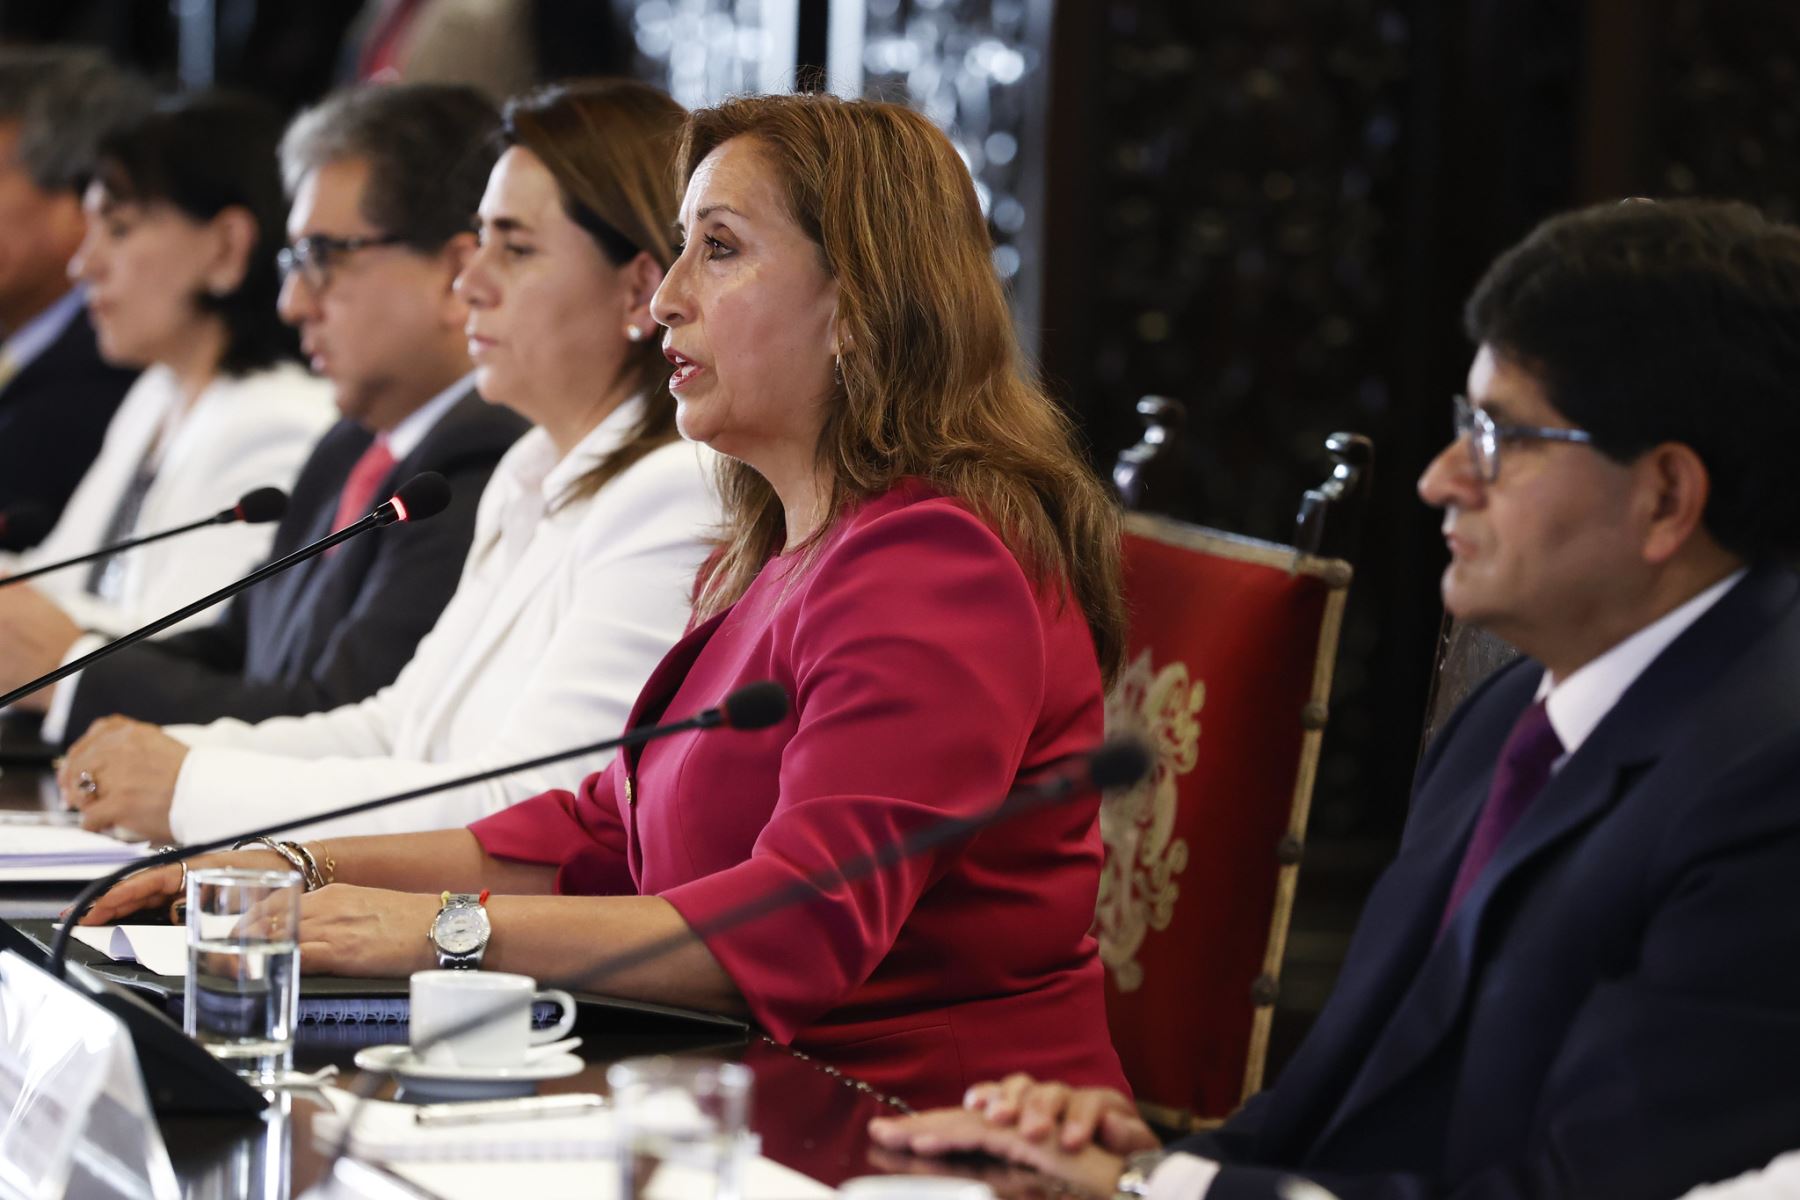 Presidenta Dina Boluarte participa en el encuentro intergubernamental “Salud Compromiso de Todos”. Foto: ANDINA/ Prensa Presidencia